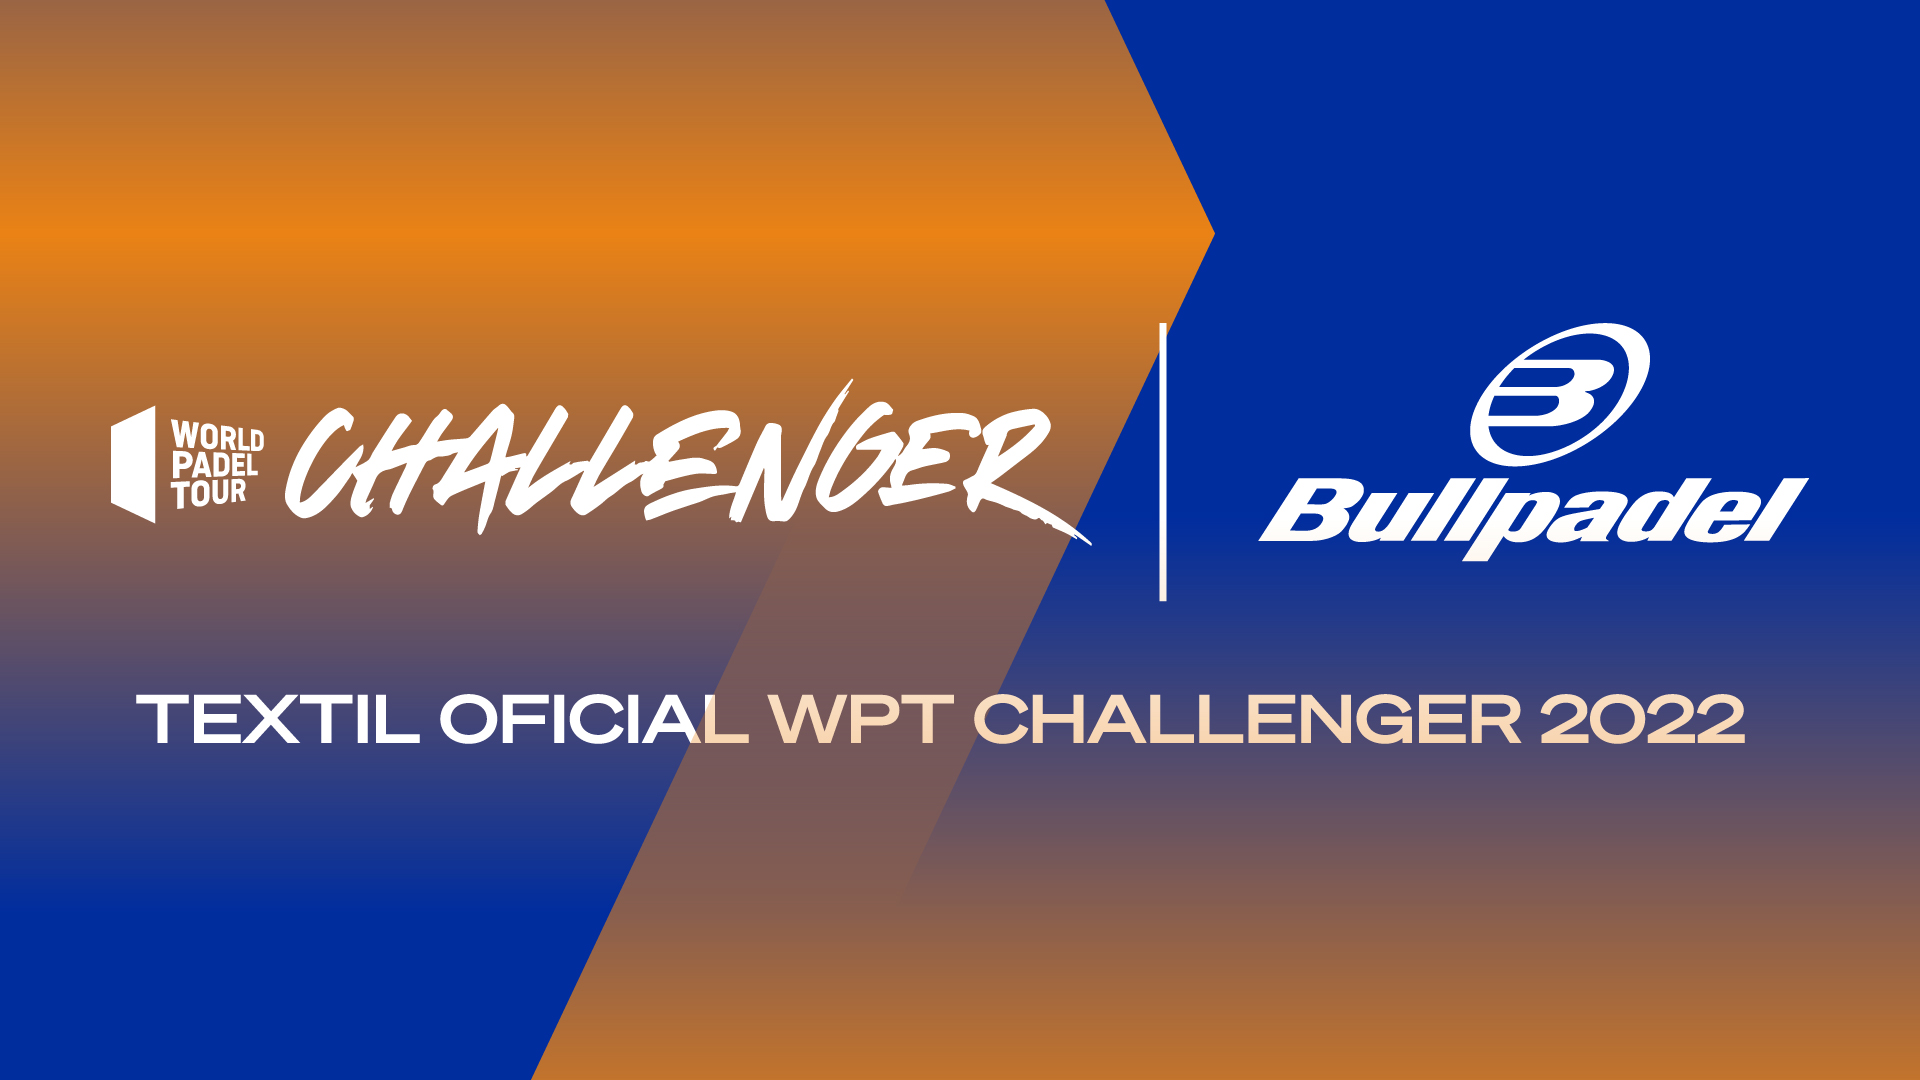 bulllpadel patrocinador challenger 2022